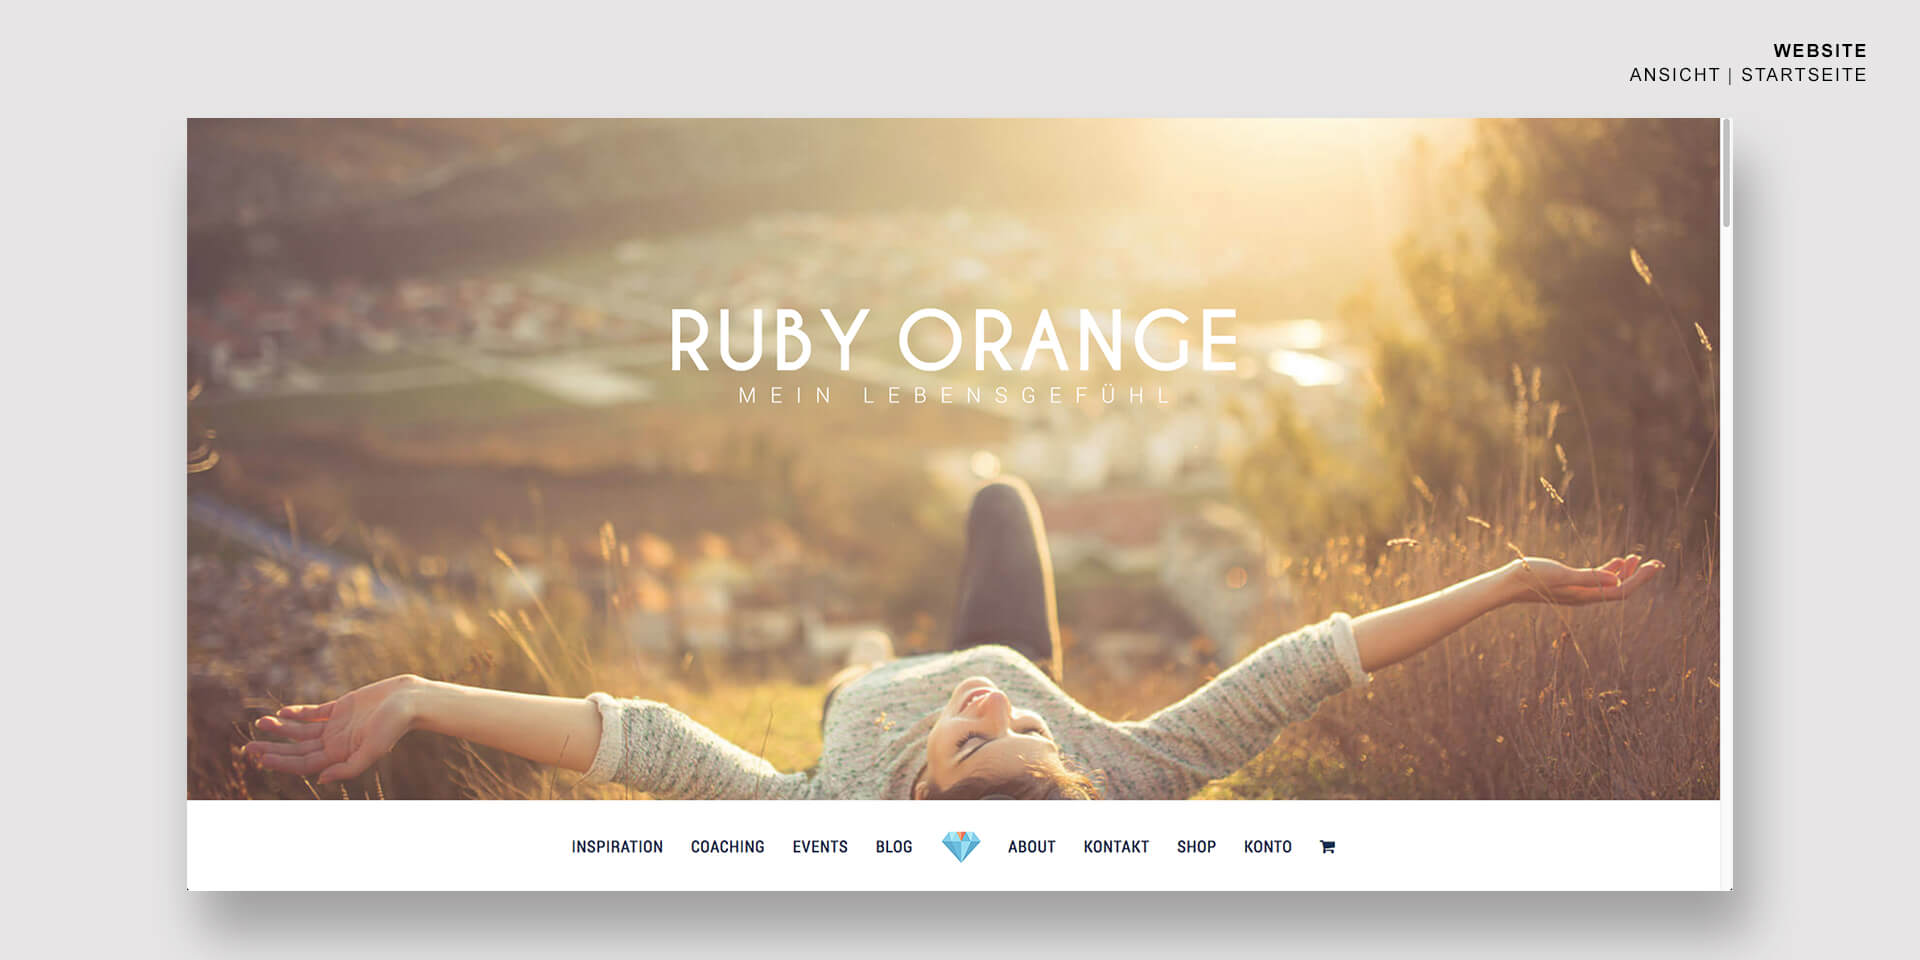 OUTFLUENCER | RUBY ORANGE | Webdesign Ansicht 1